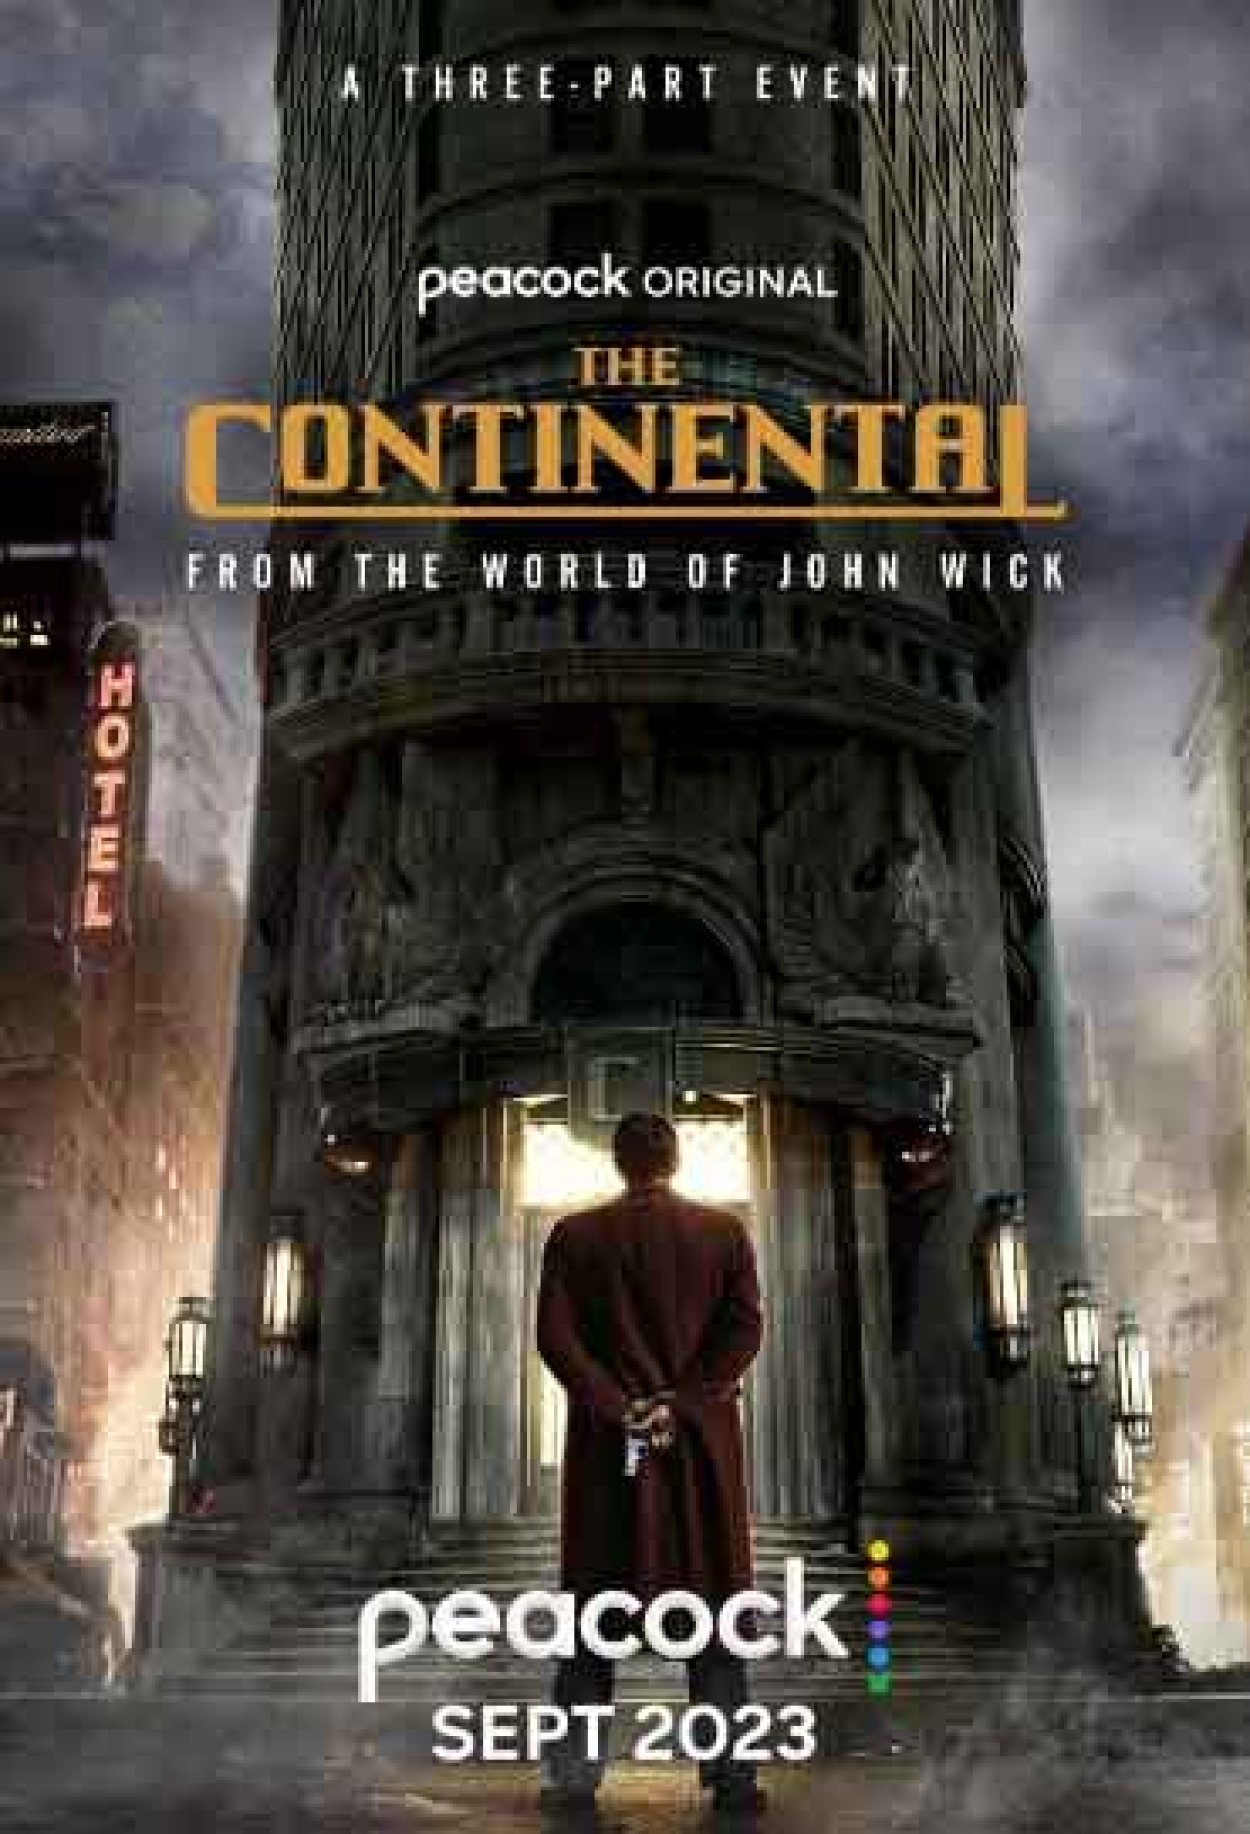 O Continental: série de John Wick terá segunda temporada no Prime Video?